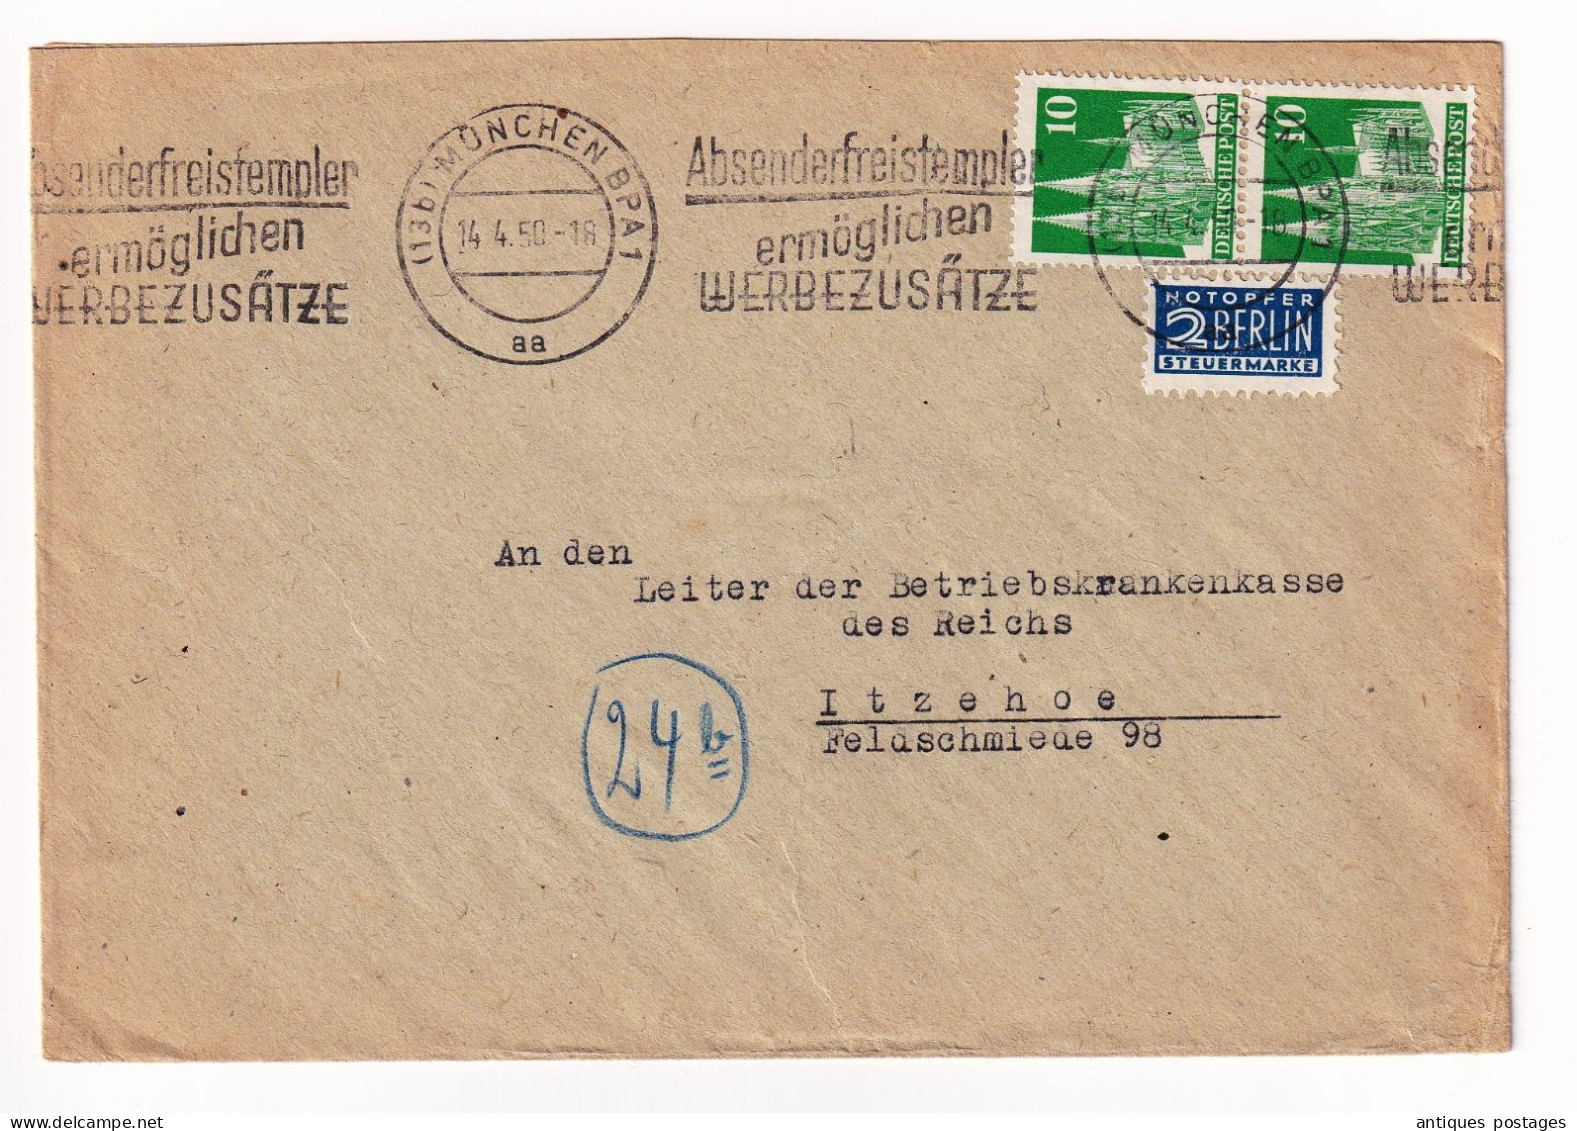 Lettre 1950 München Bayern Ursula Even Deutschland Itzehoe Absenderfreistempel Ermöglichen Werbezusätze - Storia Postale